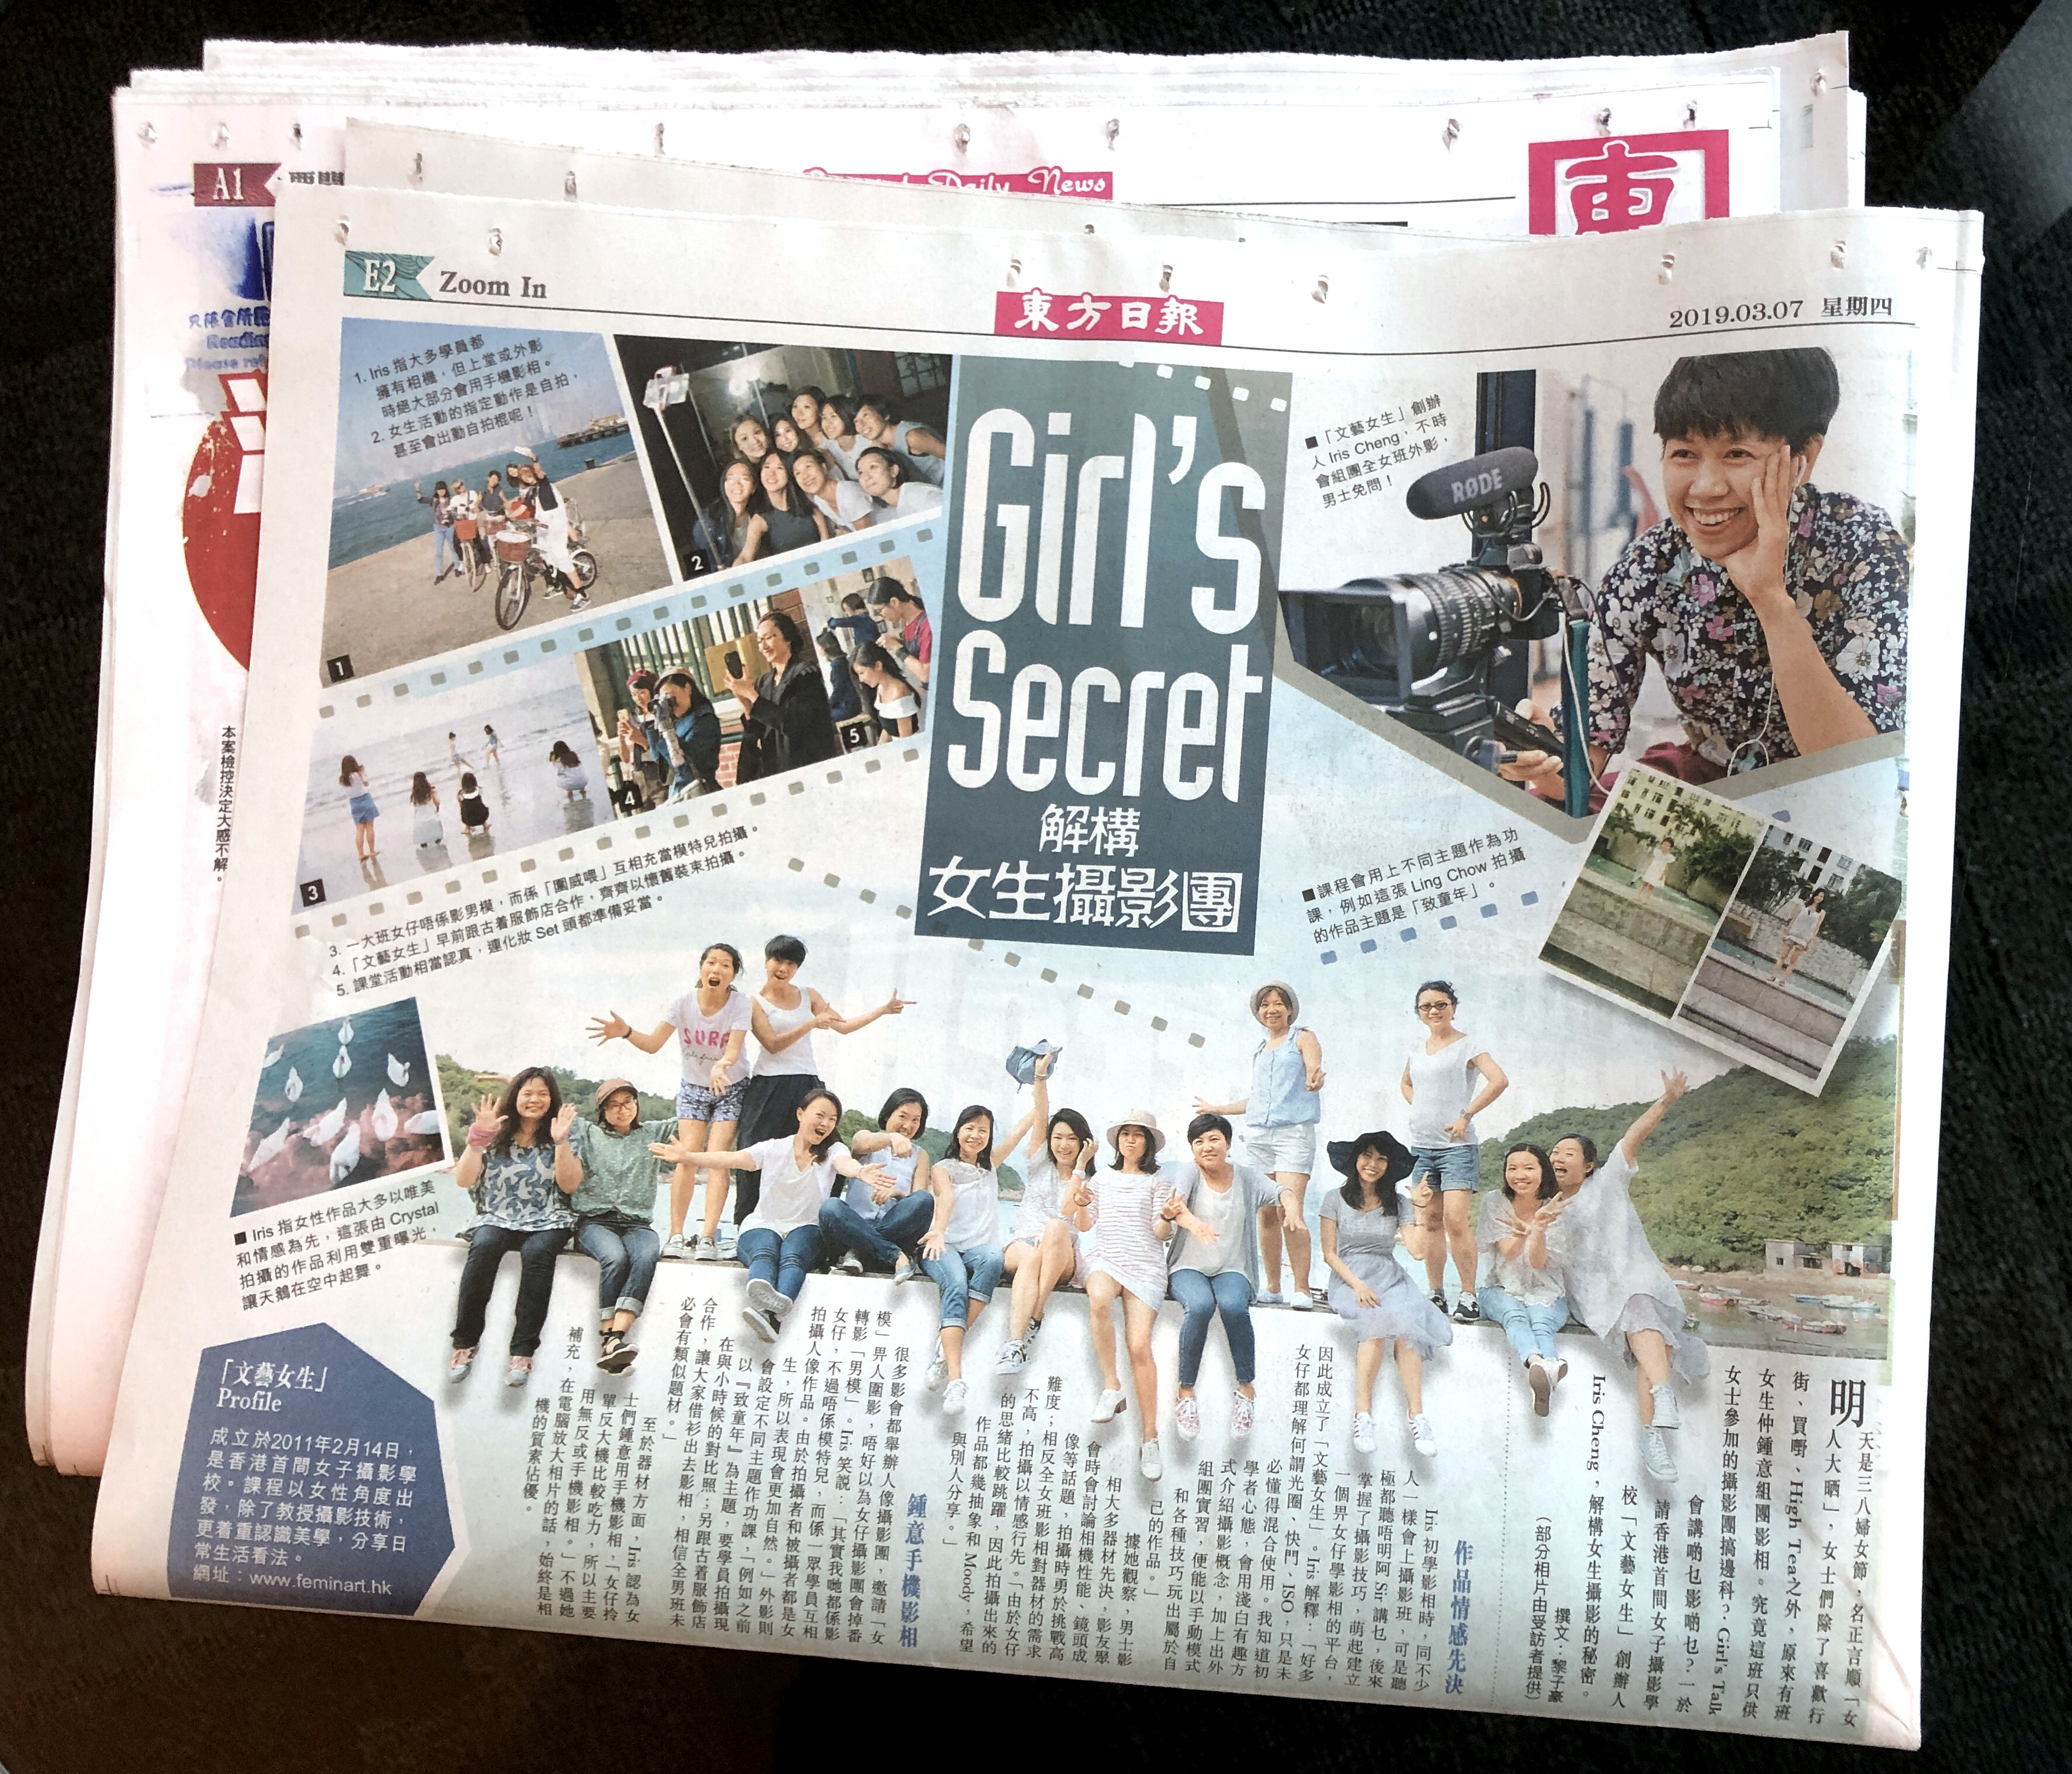 2019年3月7日 – 《東方日報》副刊 E2 – Girl’s Secret 解構女生攝影團